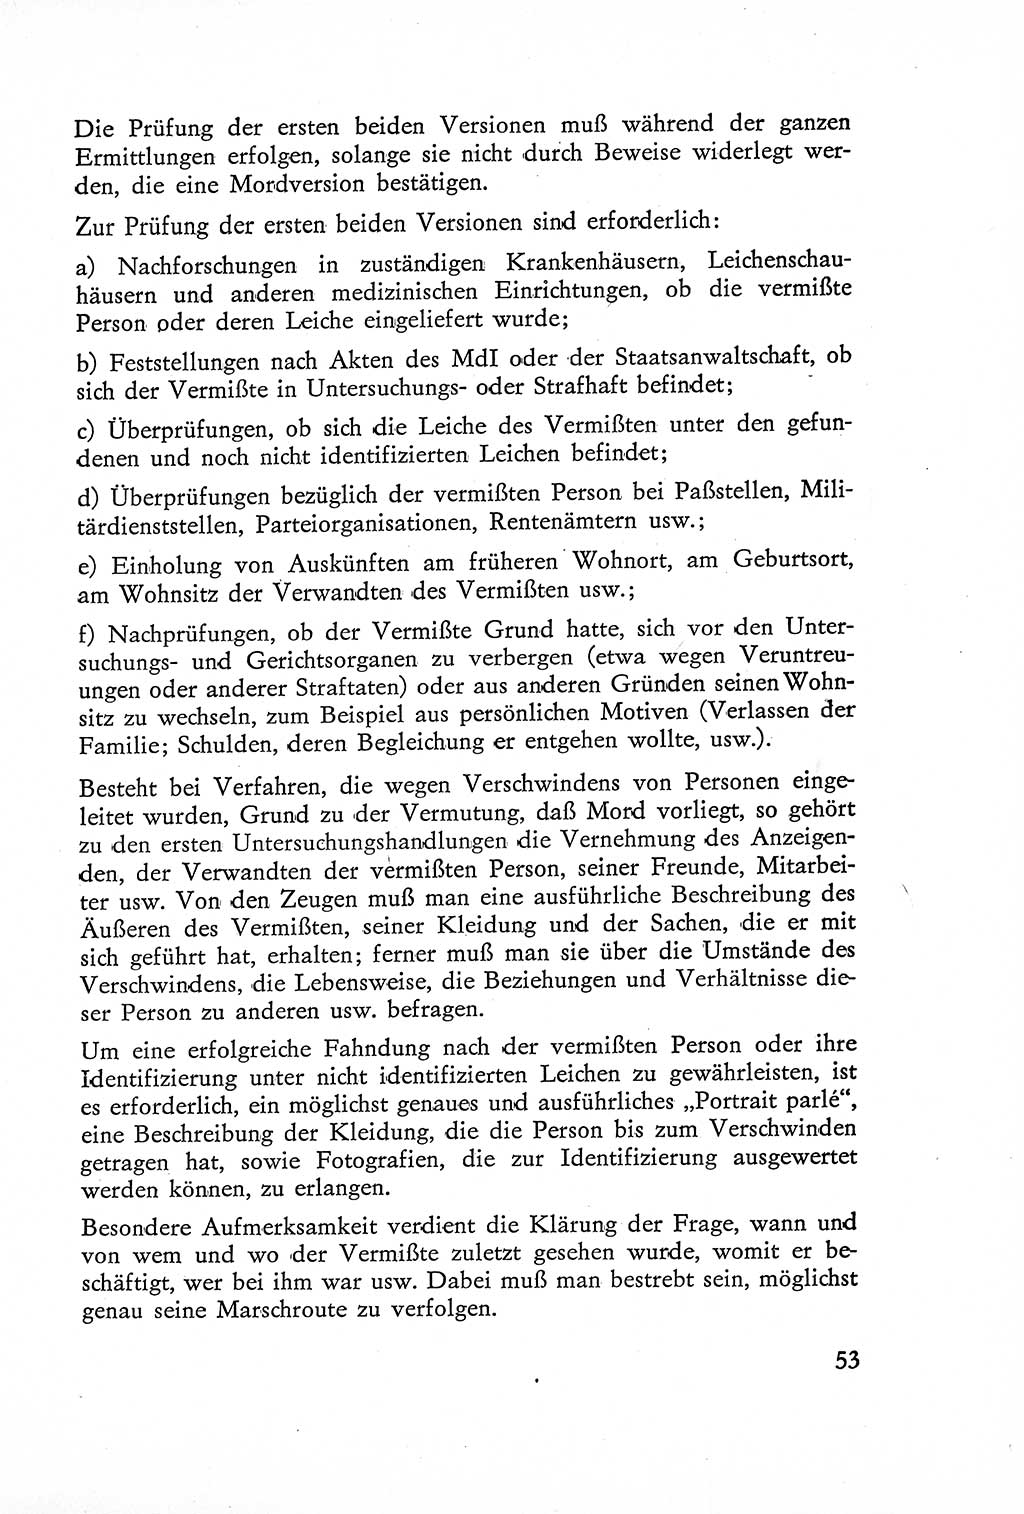 Die Untersuchung einzelner Verbrechensarten [Deutsche Demokratische Republik (DDR)] 1960, Seite 53 (Unters. Verbr.-Art. DDR 1960, S. 53)